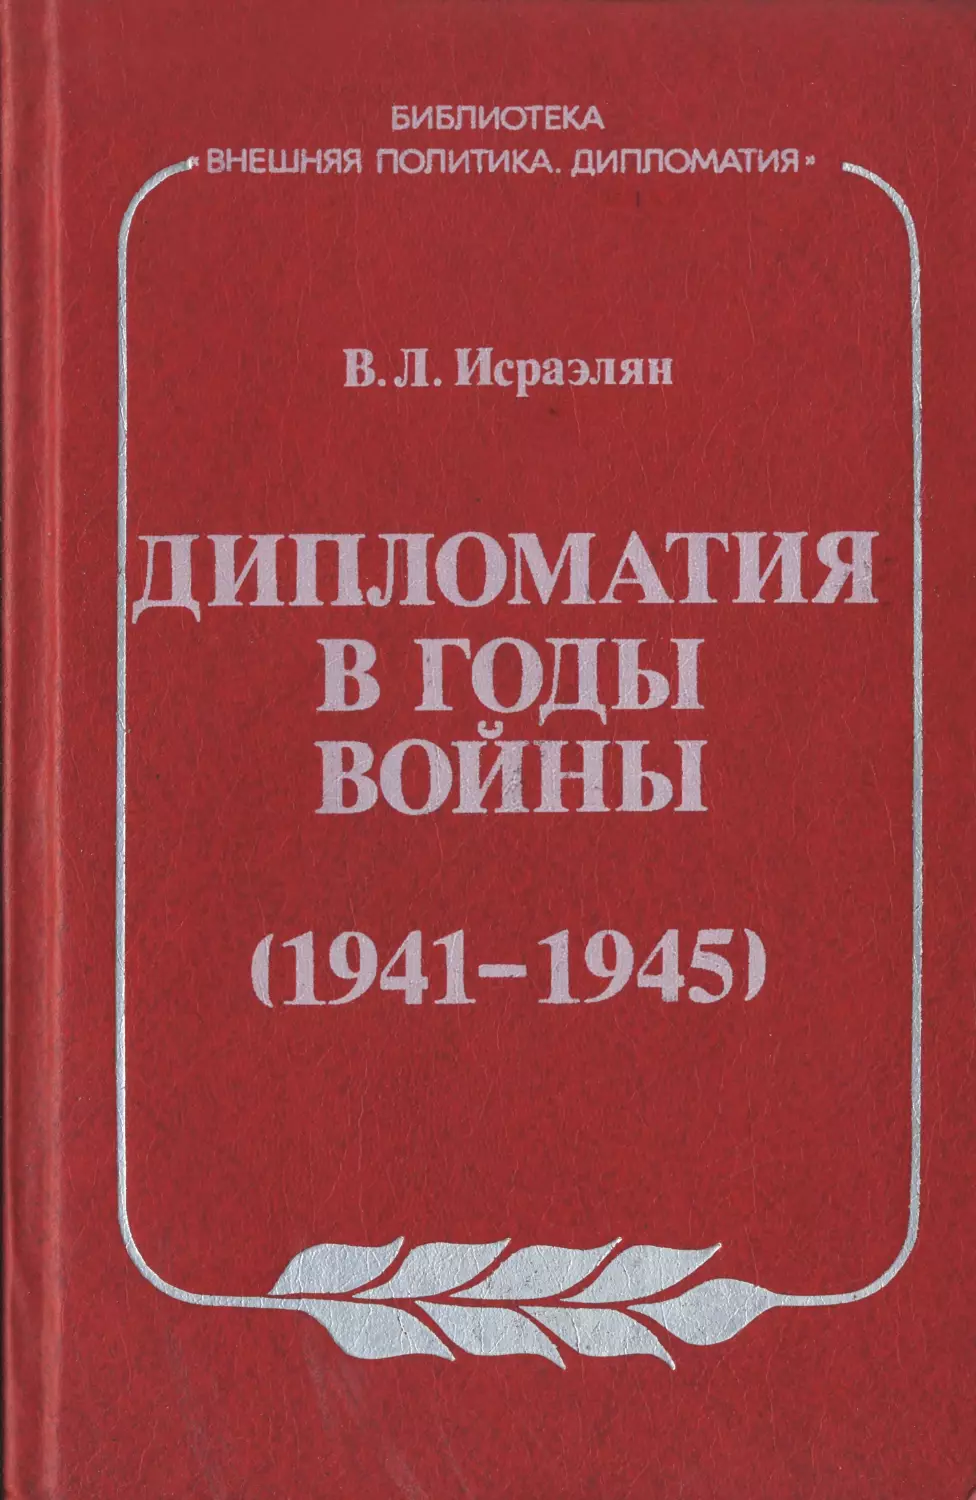 ДИПЛОМАТИЯ В  ГОДЫ  ВОЙНЫ: 1941  —  1945  гг